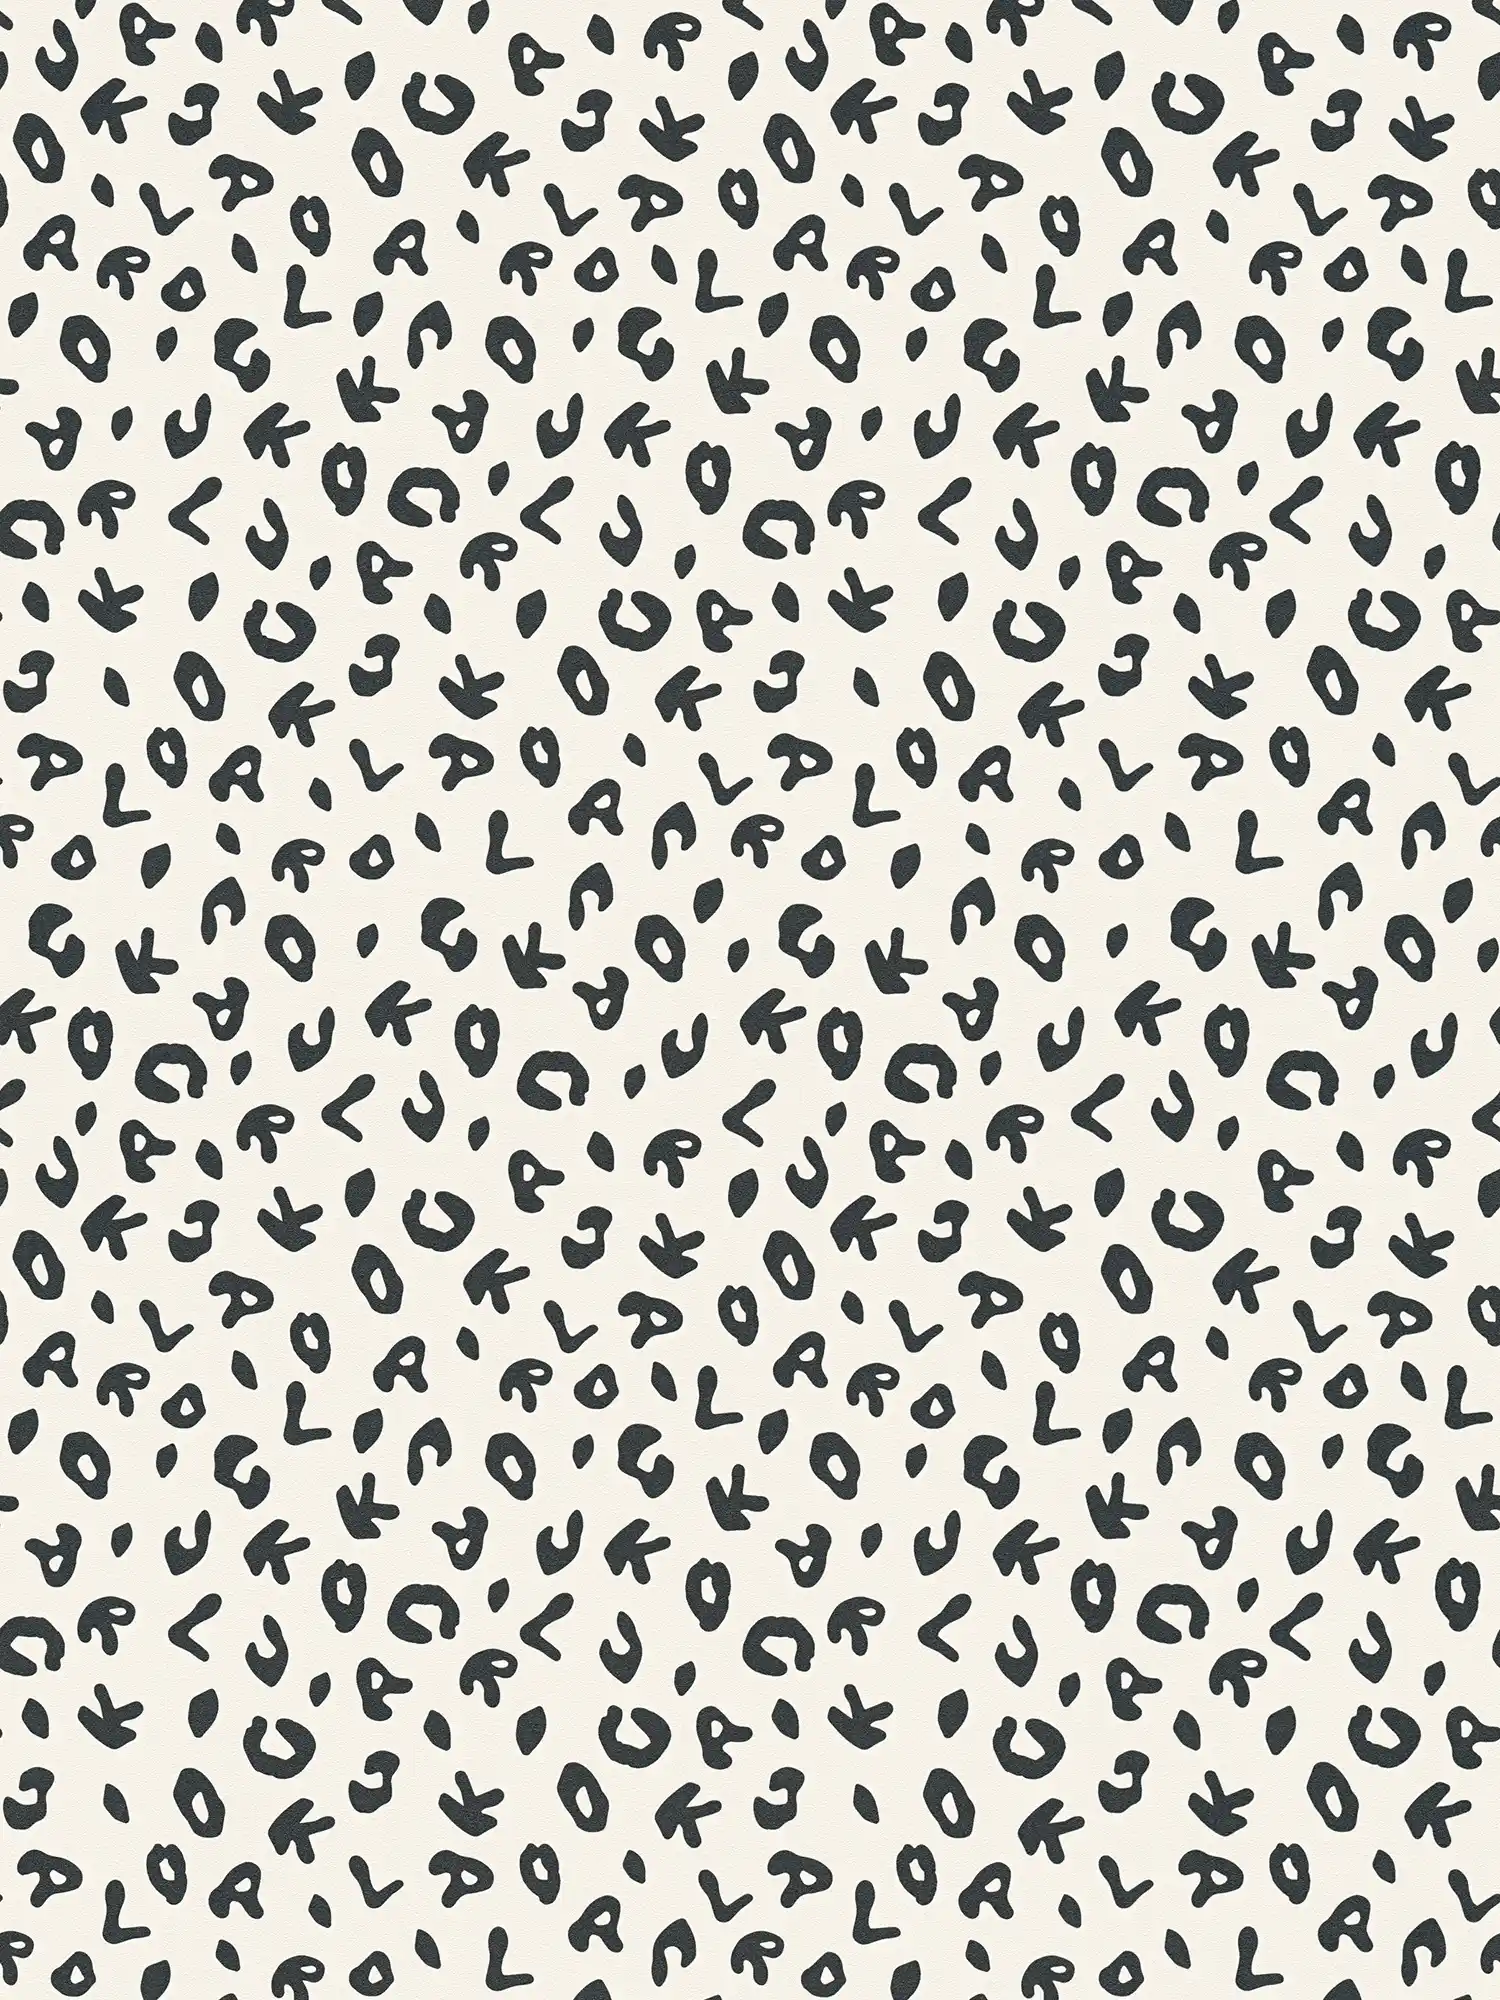         Karl LAGERFELD Tapete im Leoparden Print Stil – Schwarz, Weiß
    